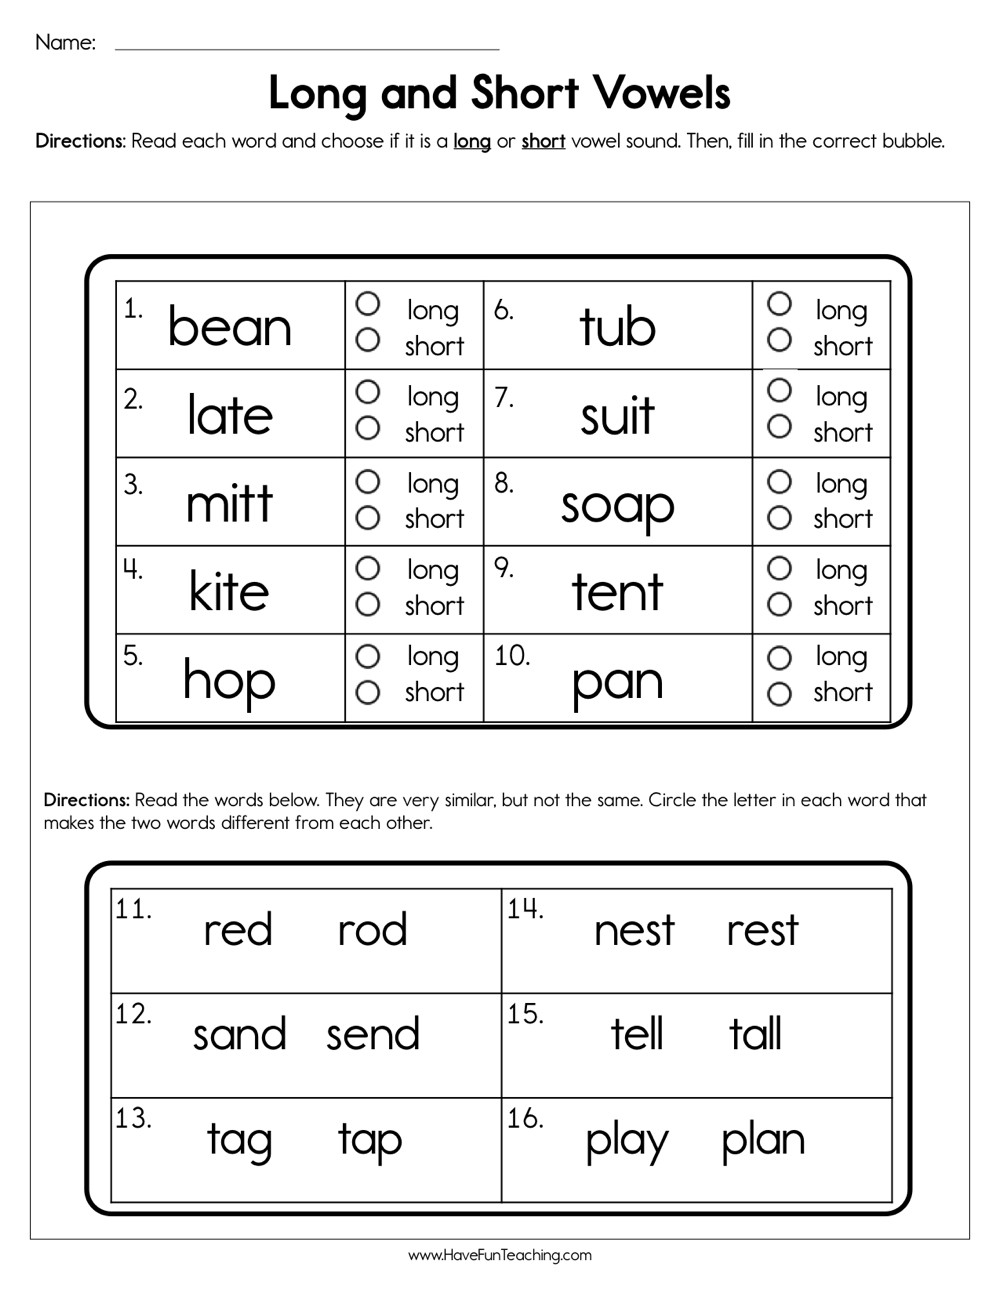 Long Vowels Worksheets First Grade Long and Short Vowels Worksheet